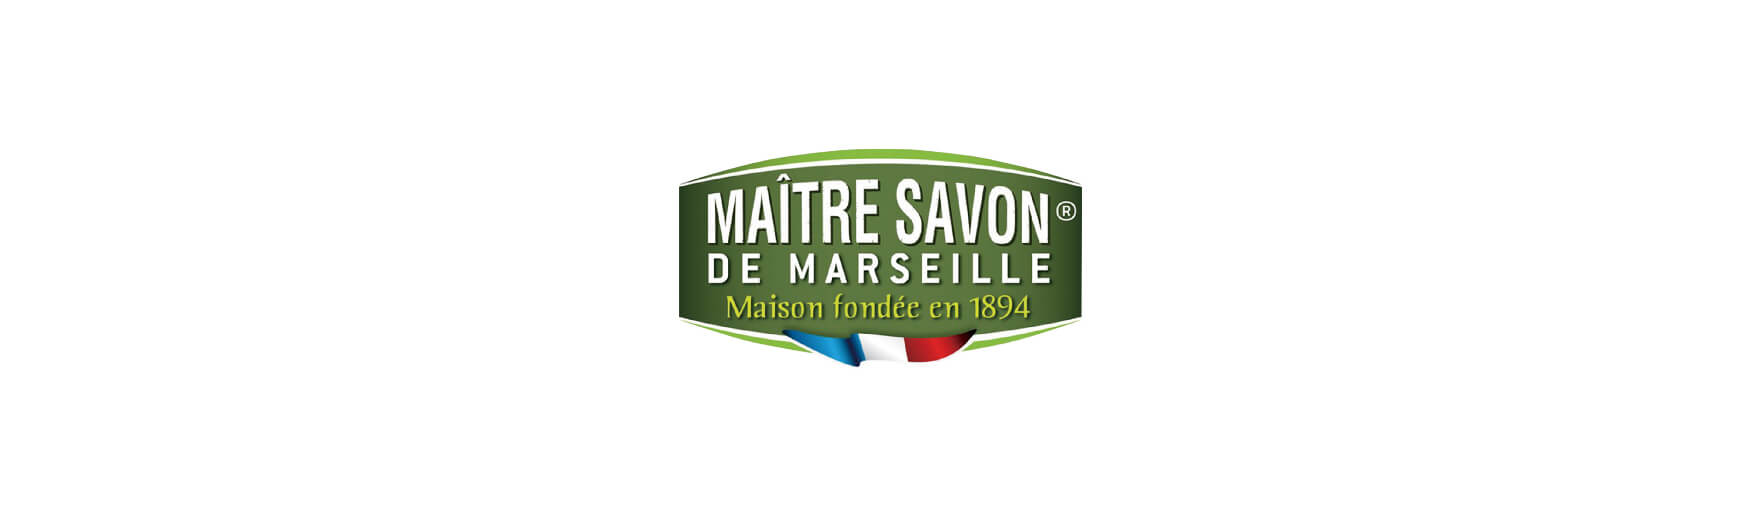 Maitre Savon de Marseille / メートル サボン ド マルセイユ